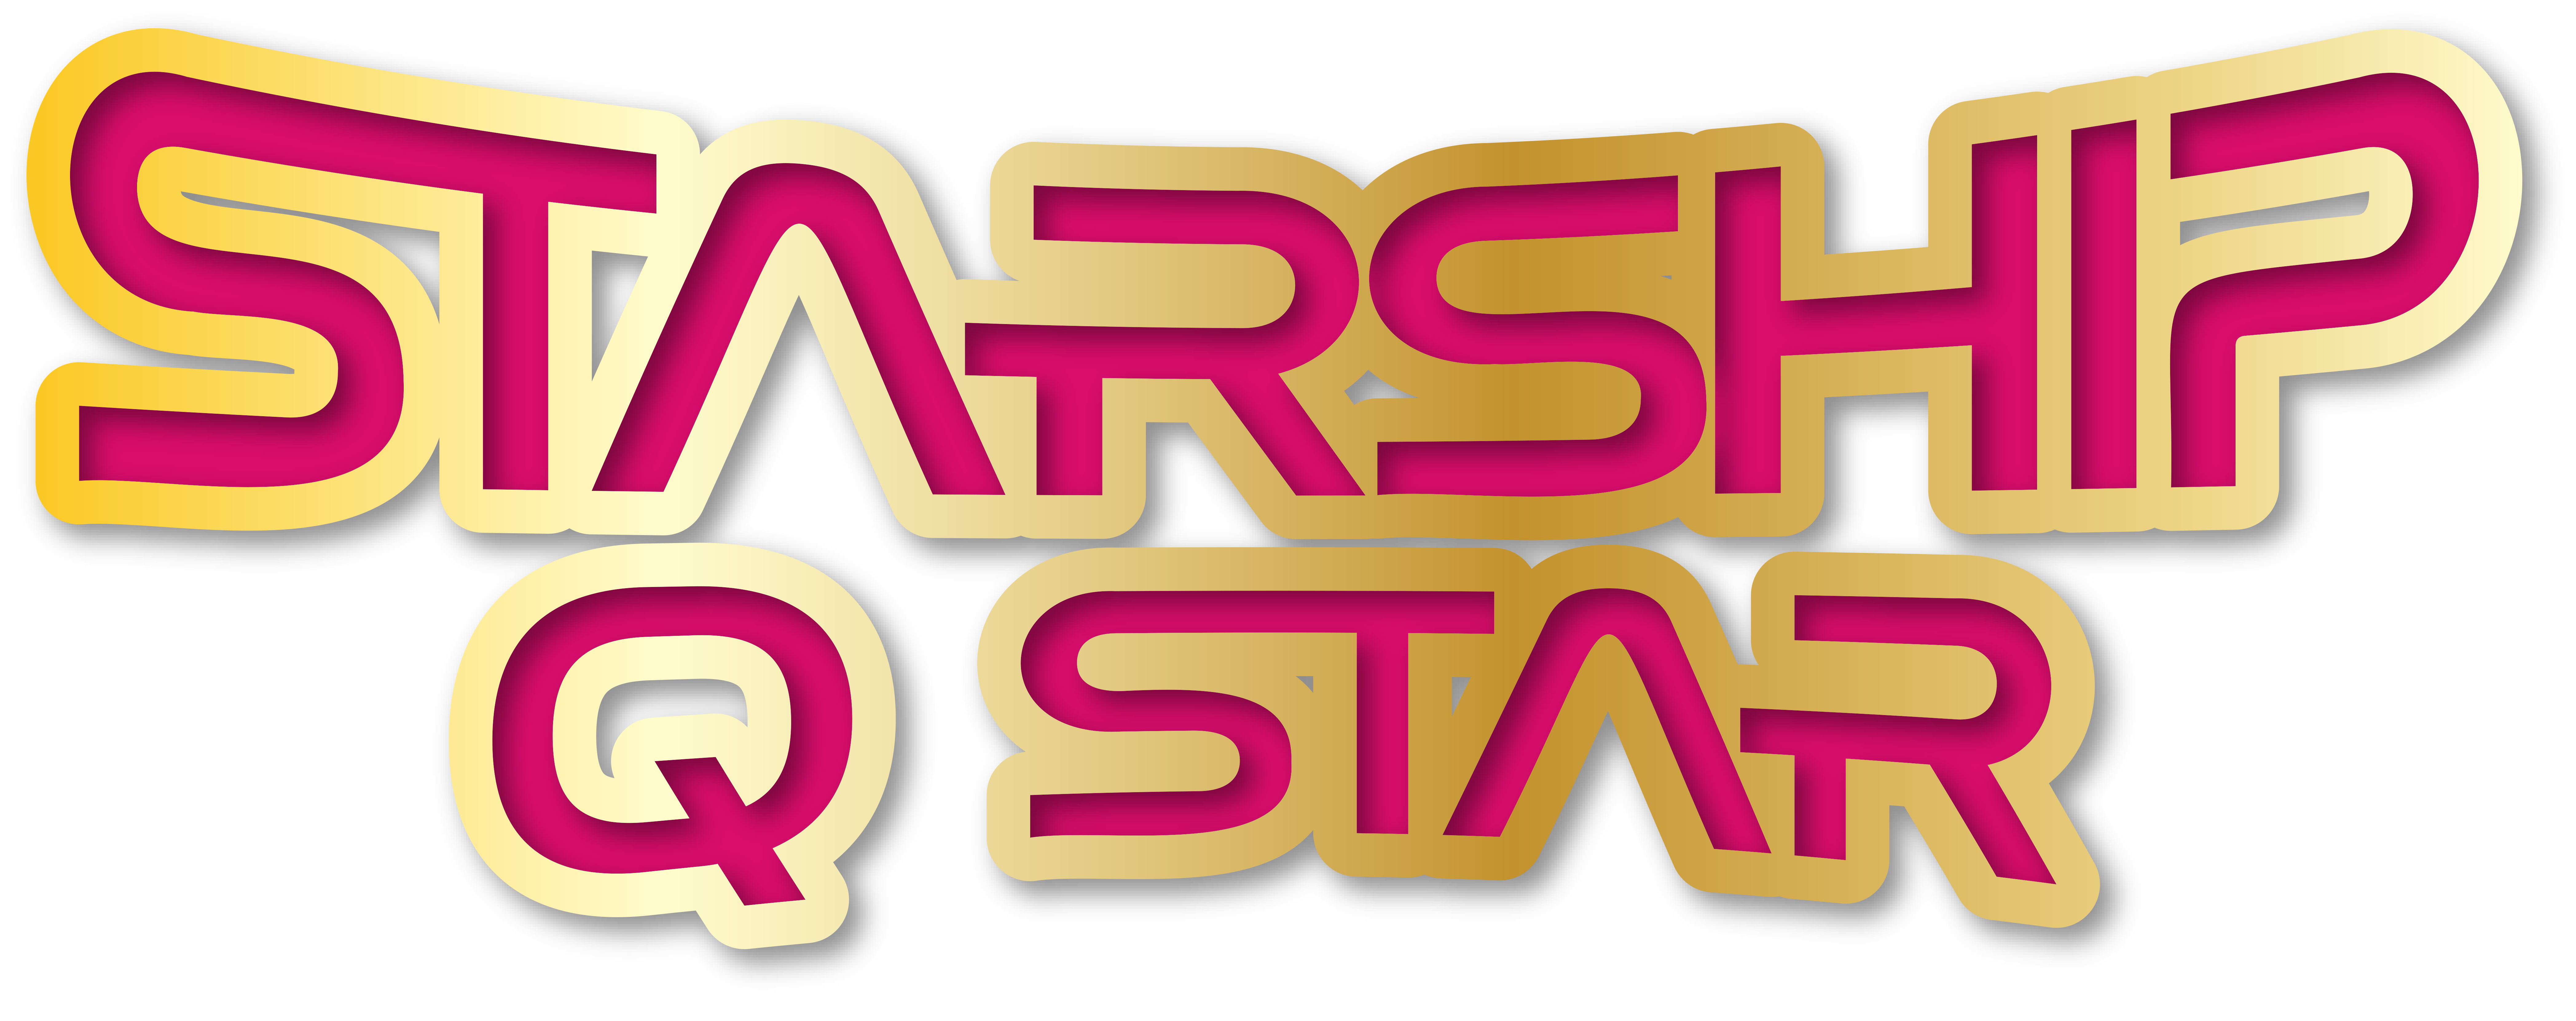 Starship Q Star